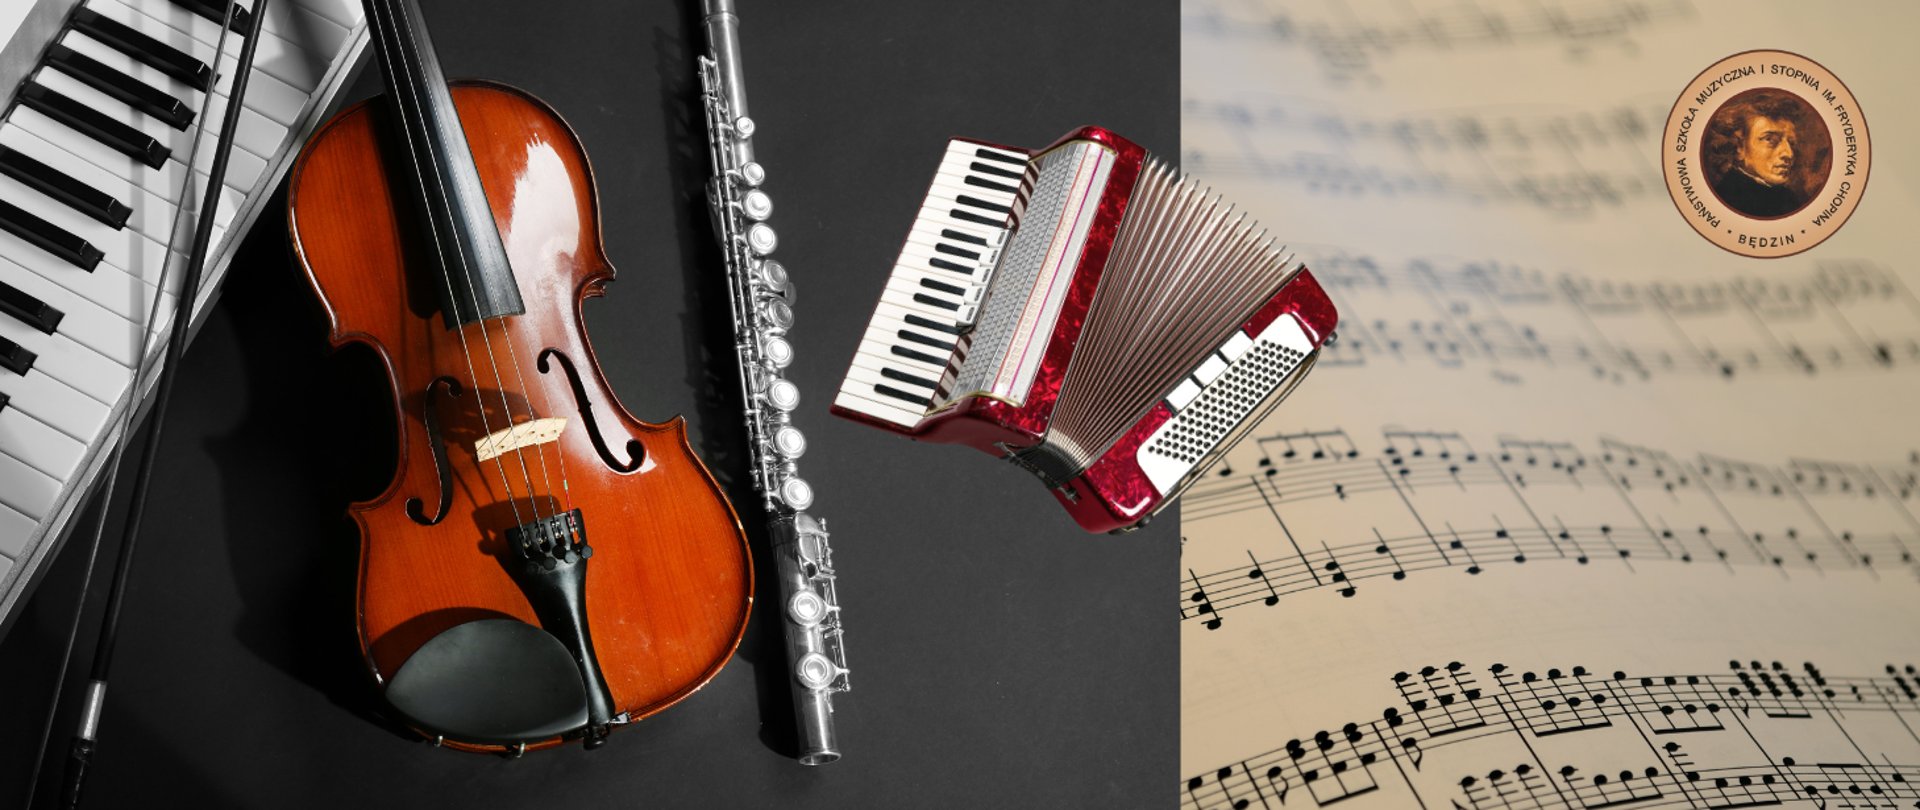 na banerze z lewej strony instrumenty: skrzypce, akordeon, flet i pianino, po prawej ikony nut oraz logo szkoły